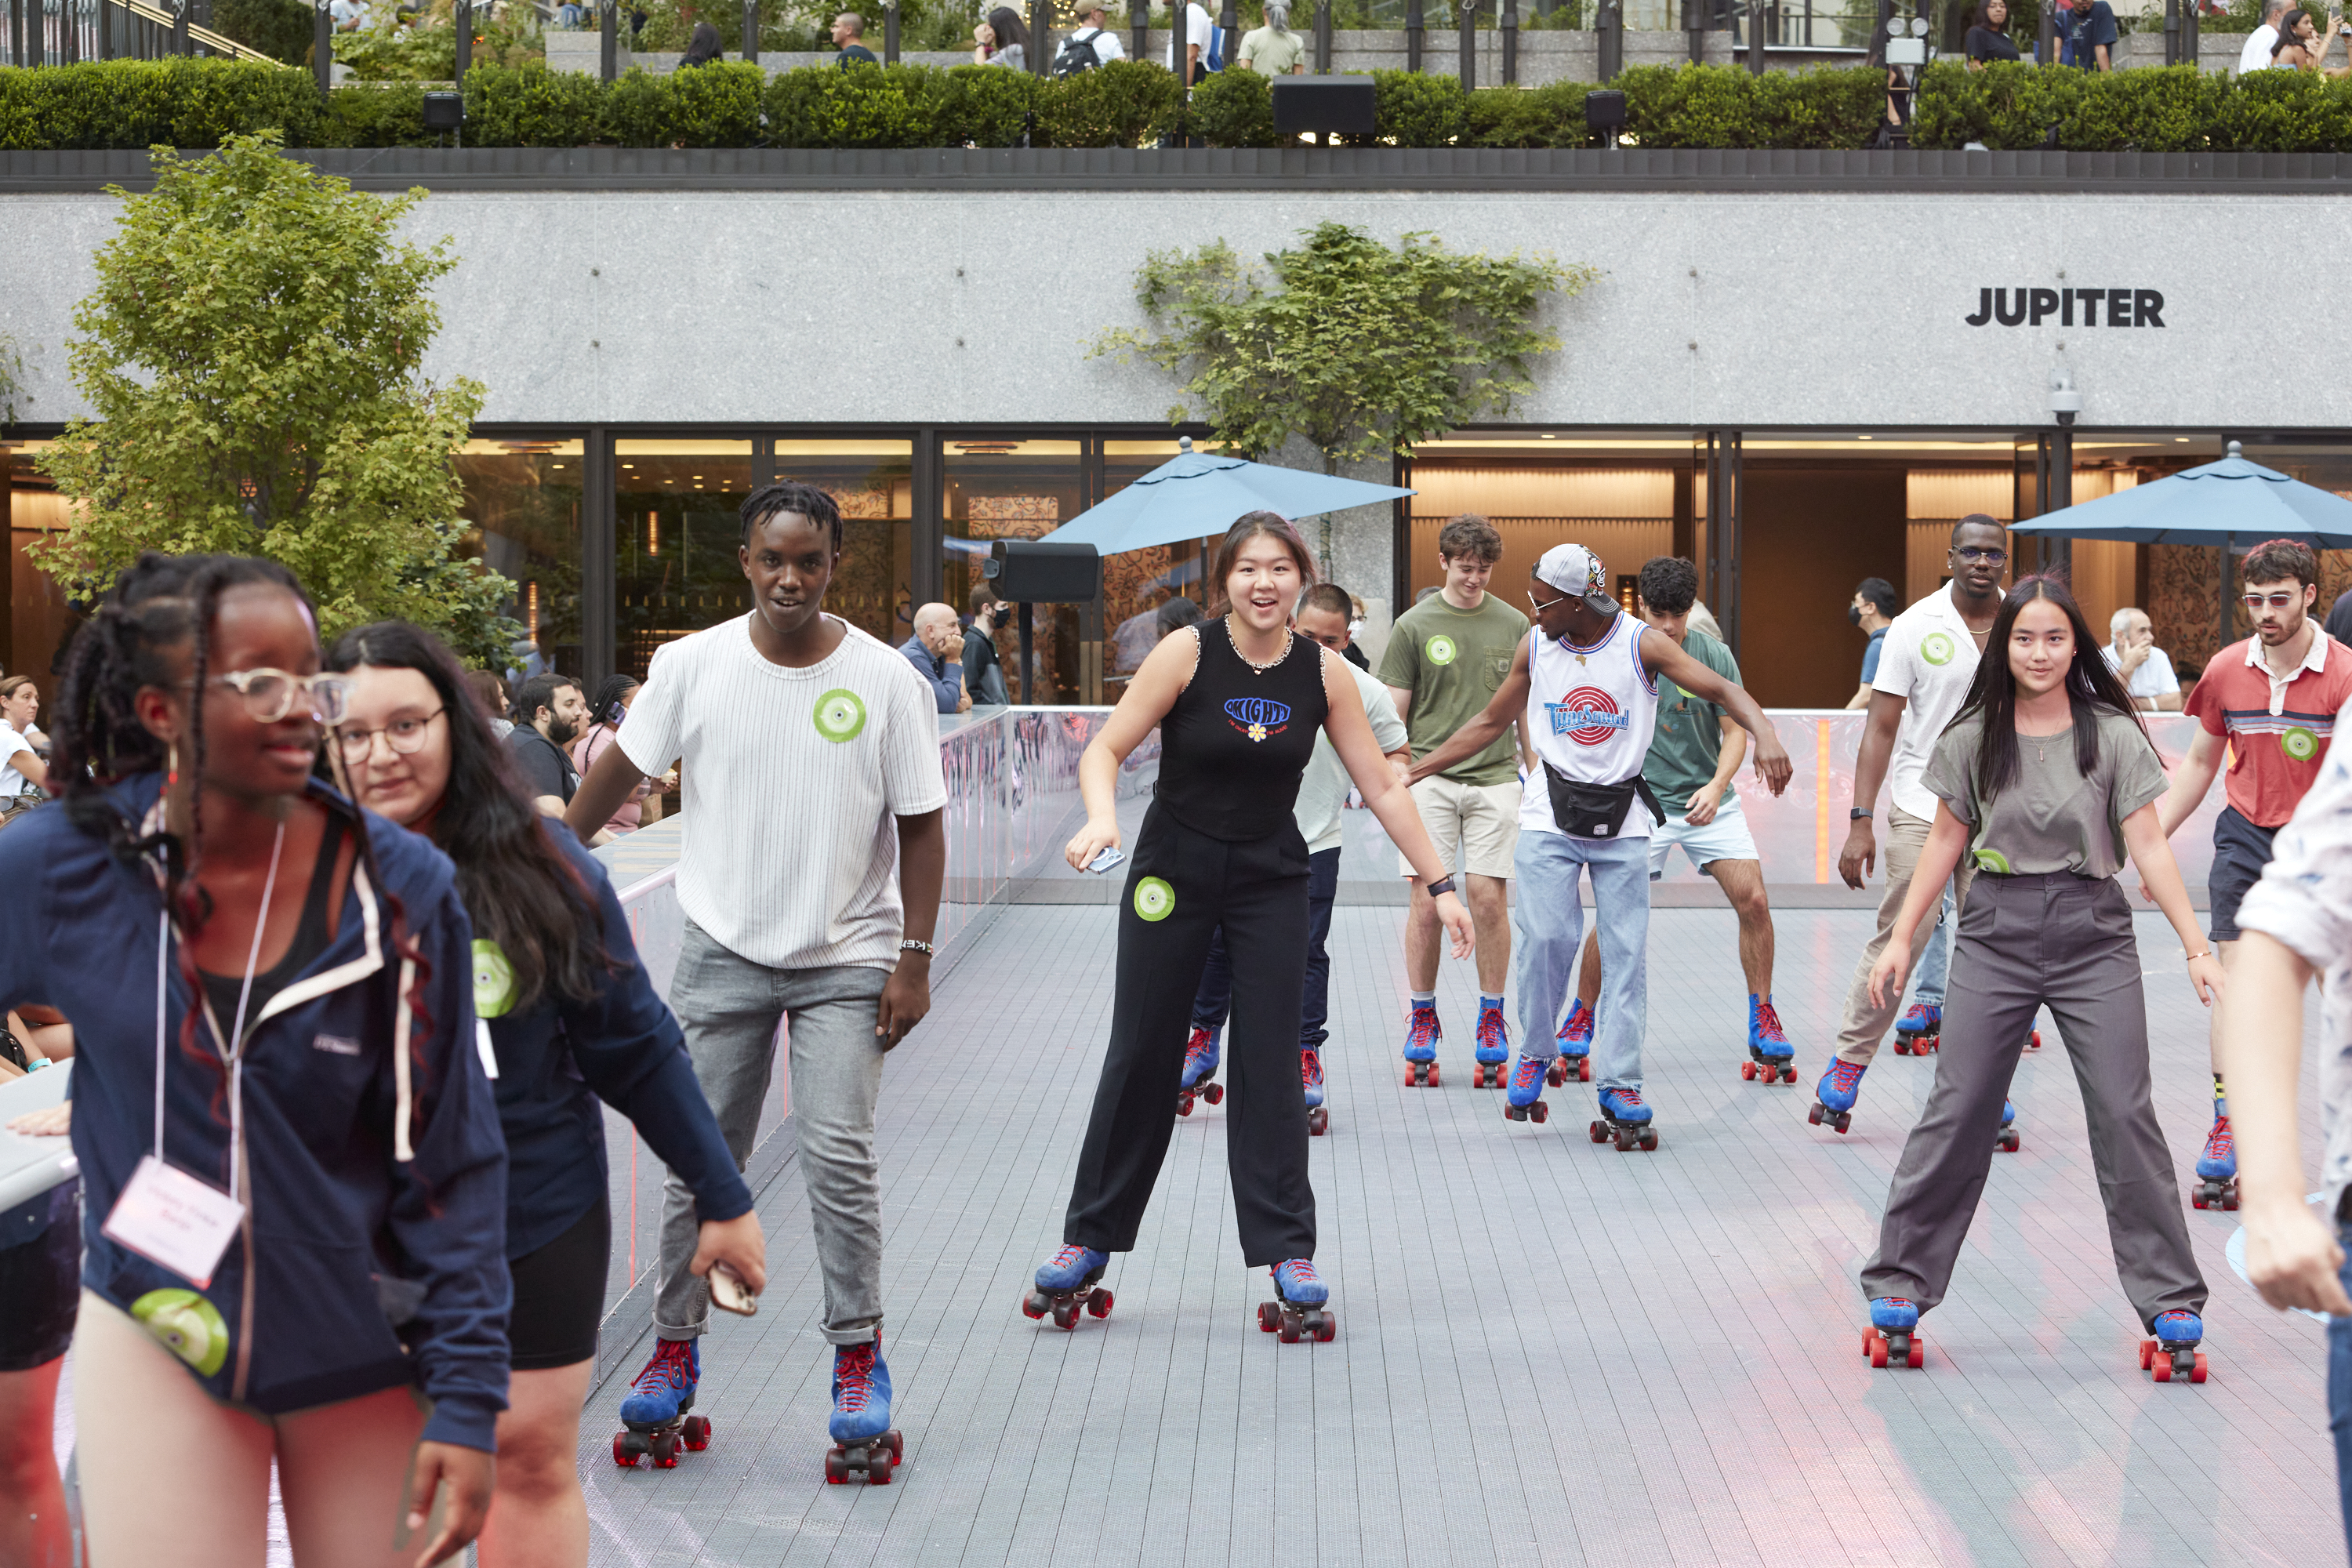 Fellows roller skate at Rockefeller Center.